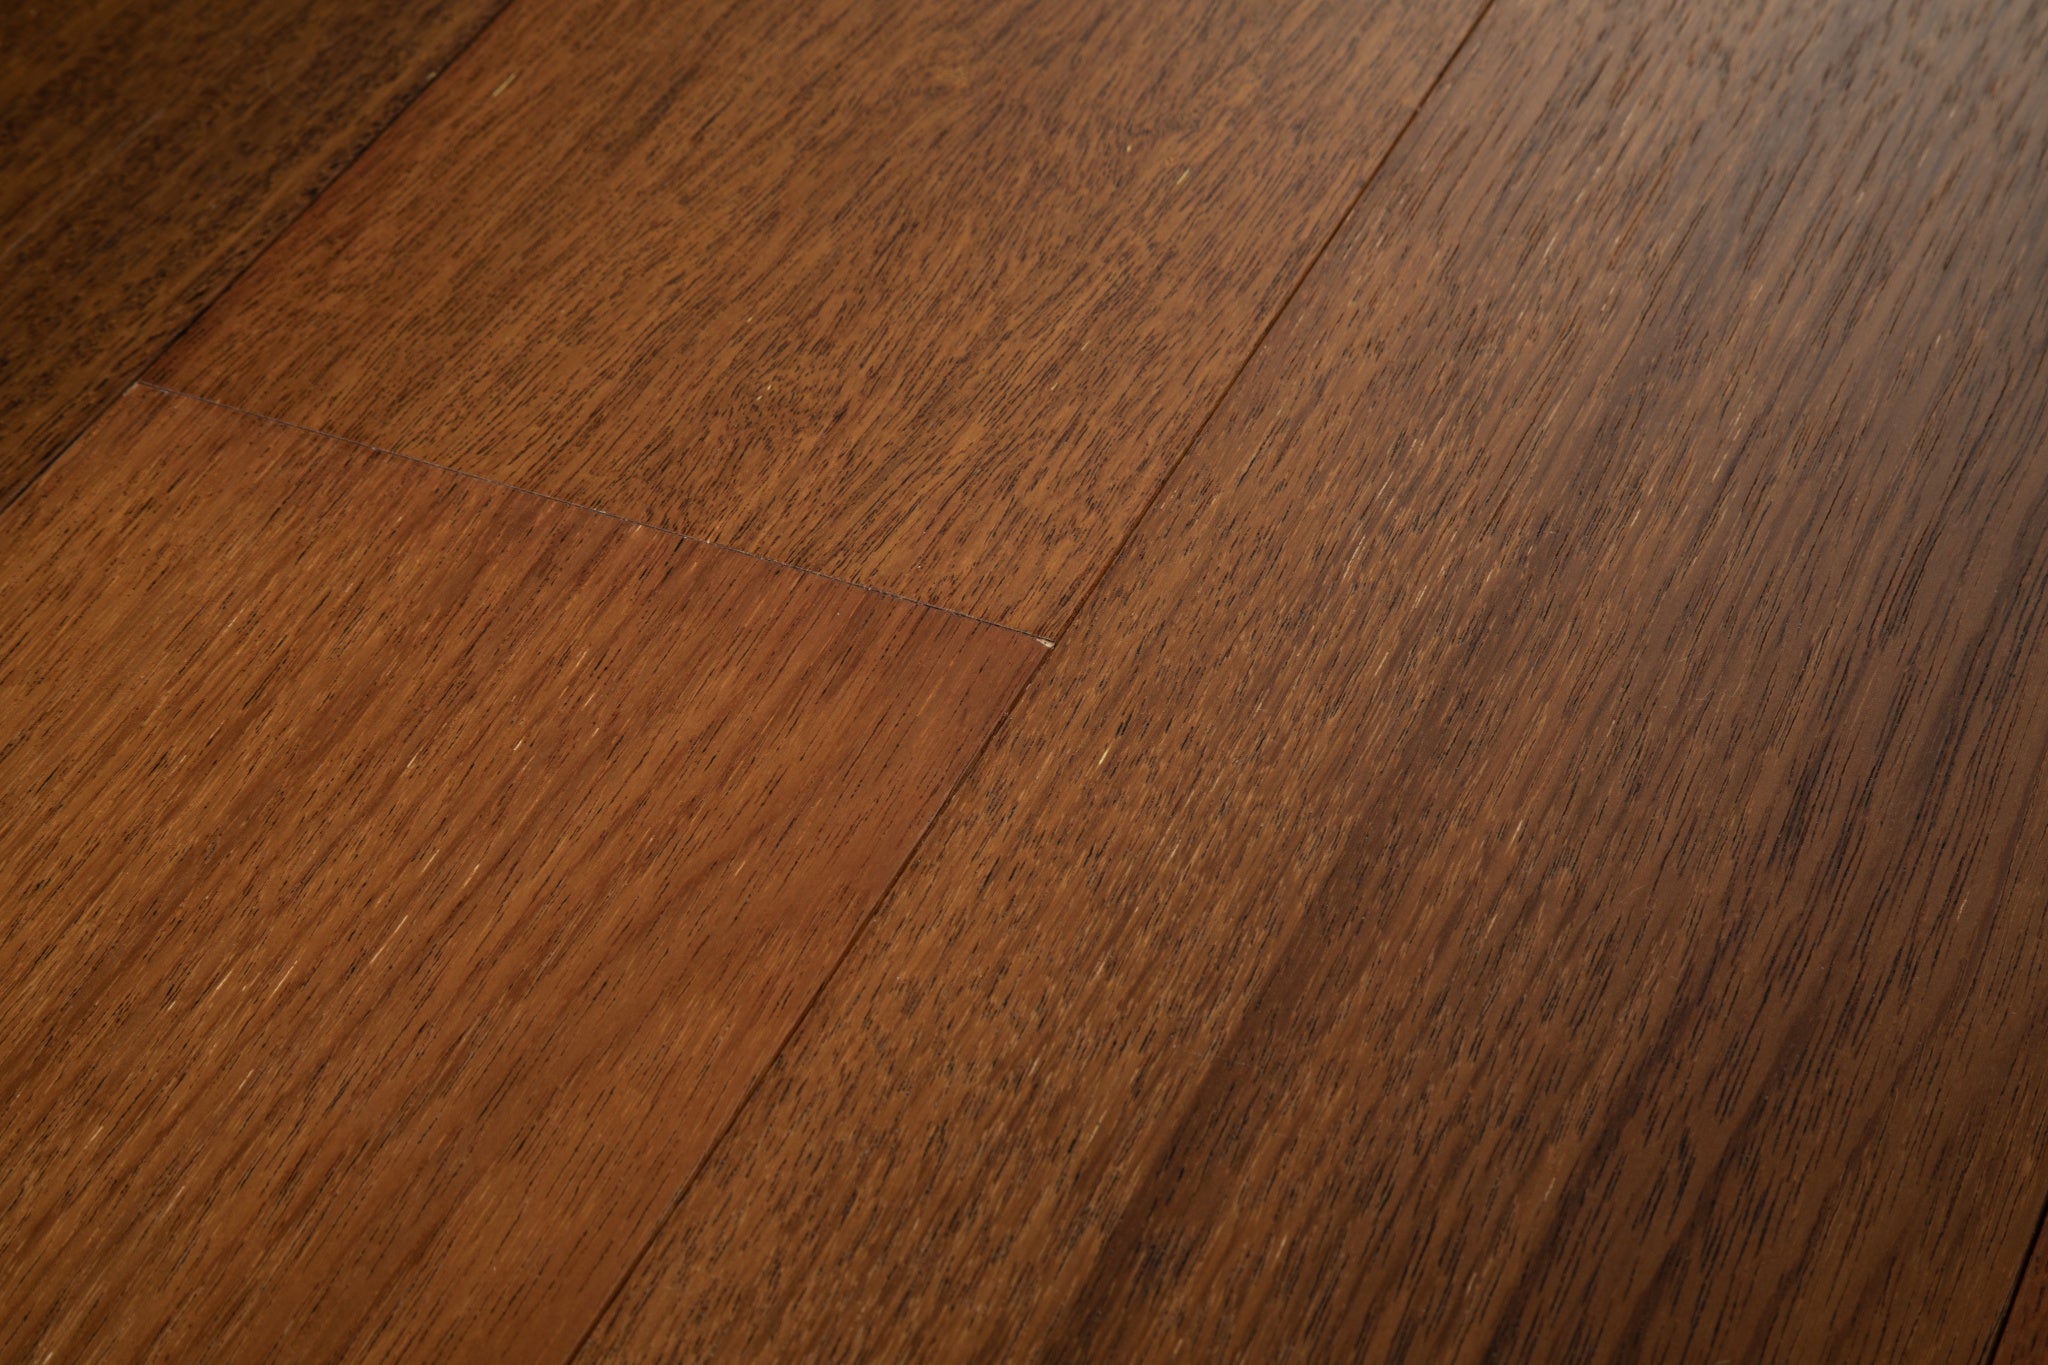 ARK Floors 多層實木複合地板 - 黃金海岸